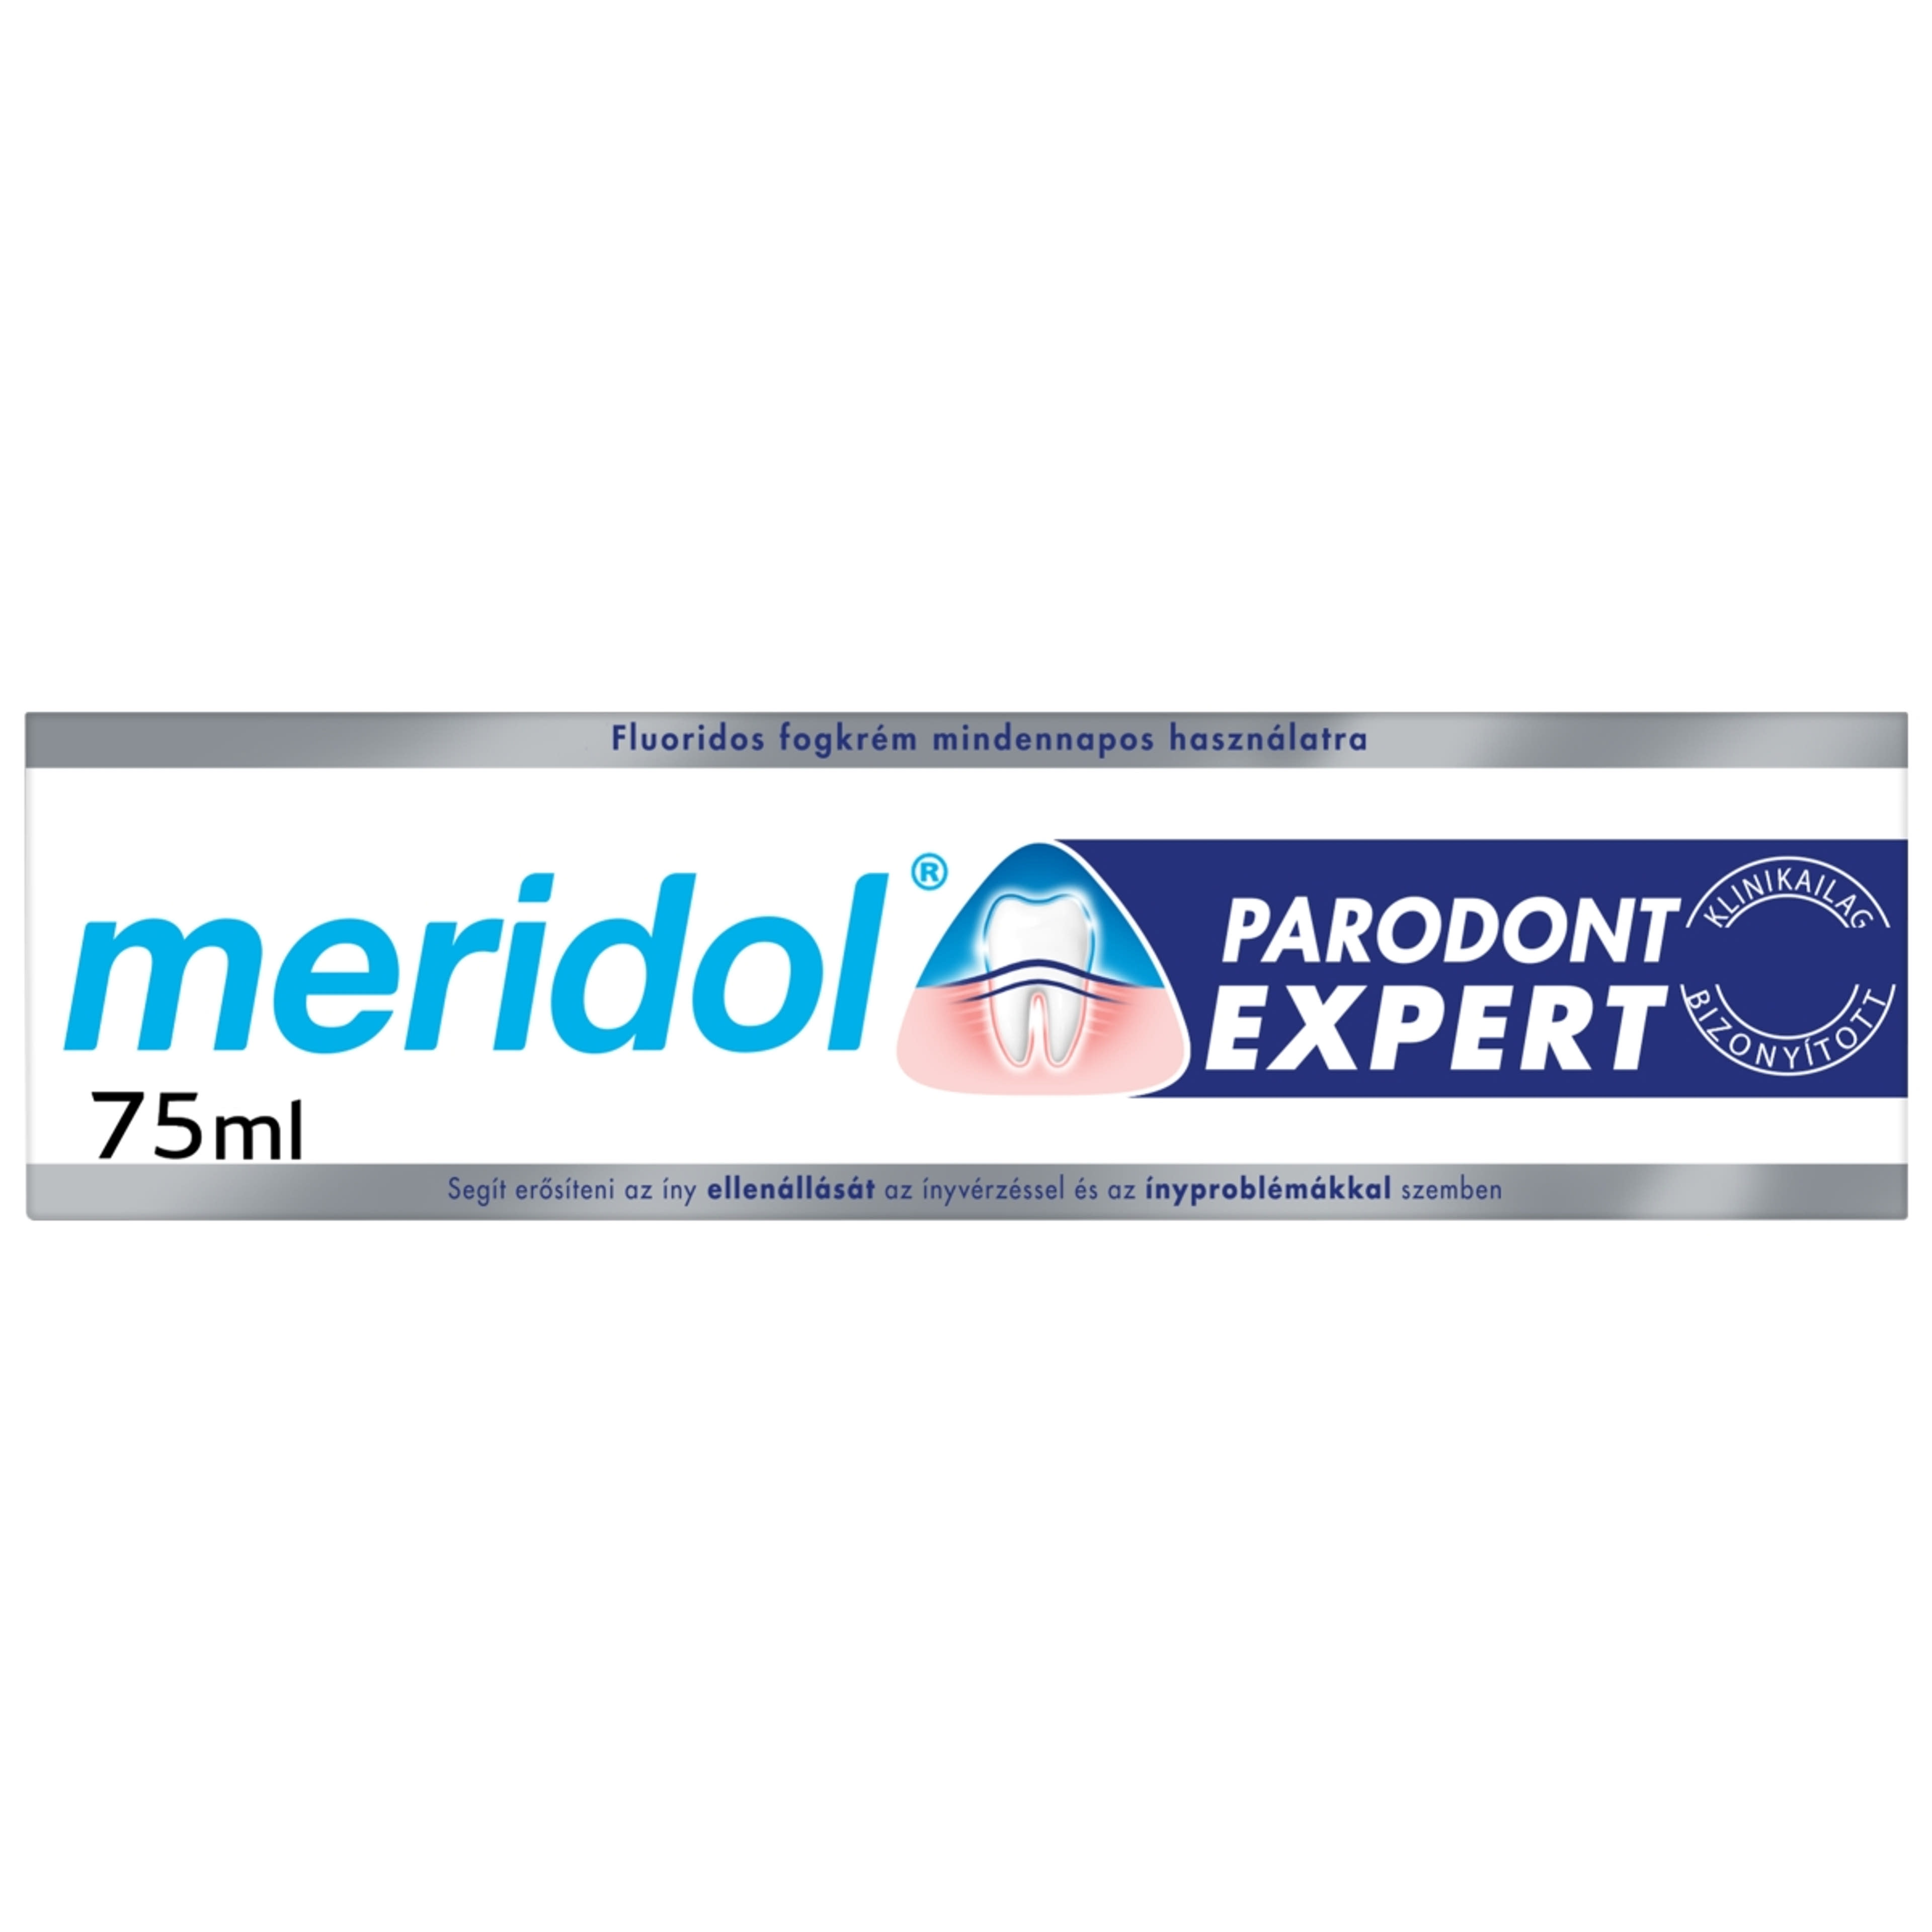 Meridol Paradont Expect fogkrém - 75 ml-5